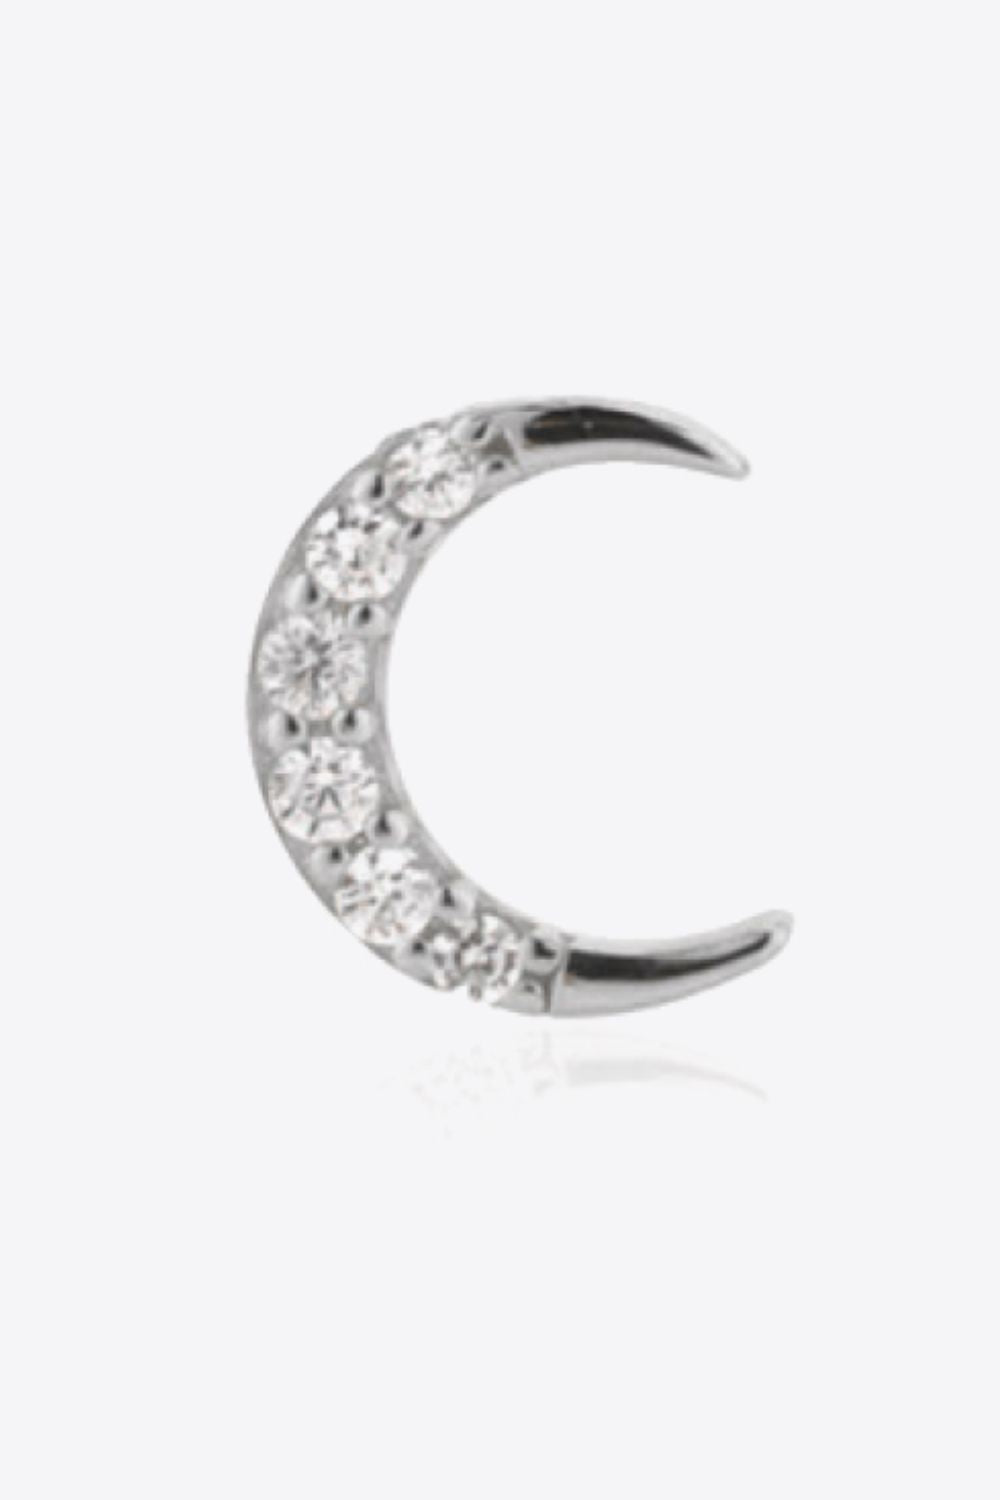 Zircon Moon 925 Sterling Silver Stud Earrings - Guy Christopher 